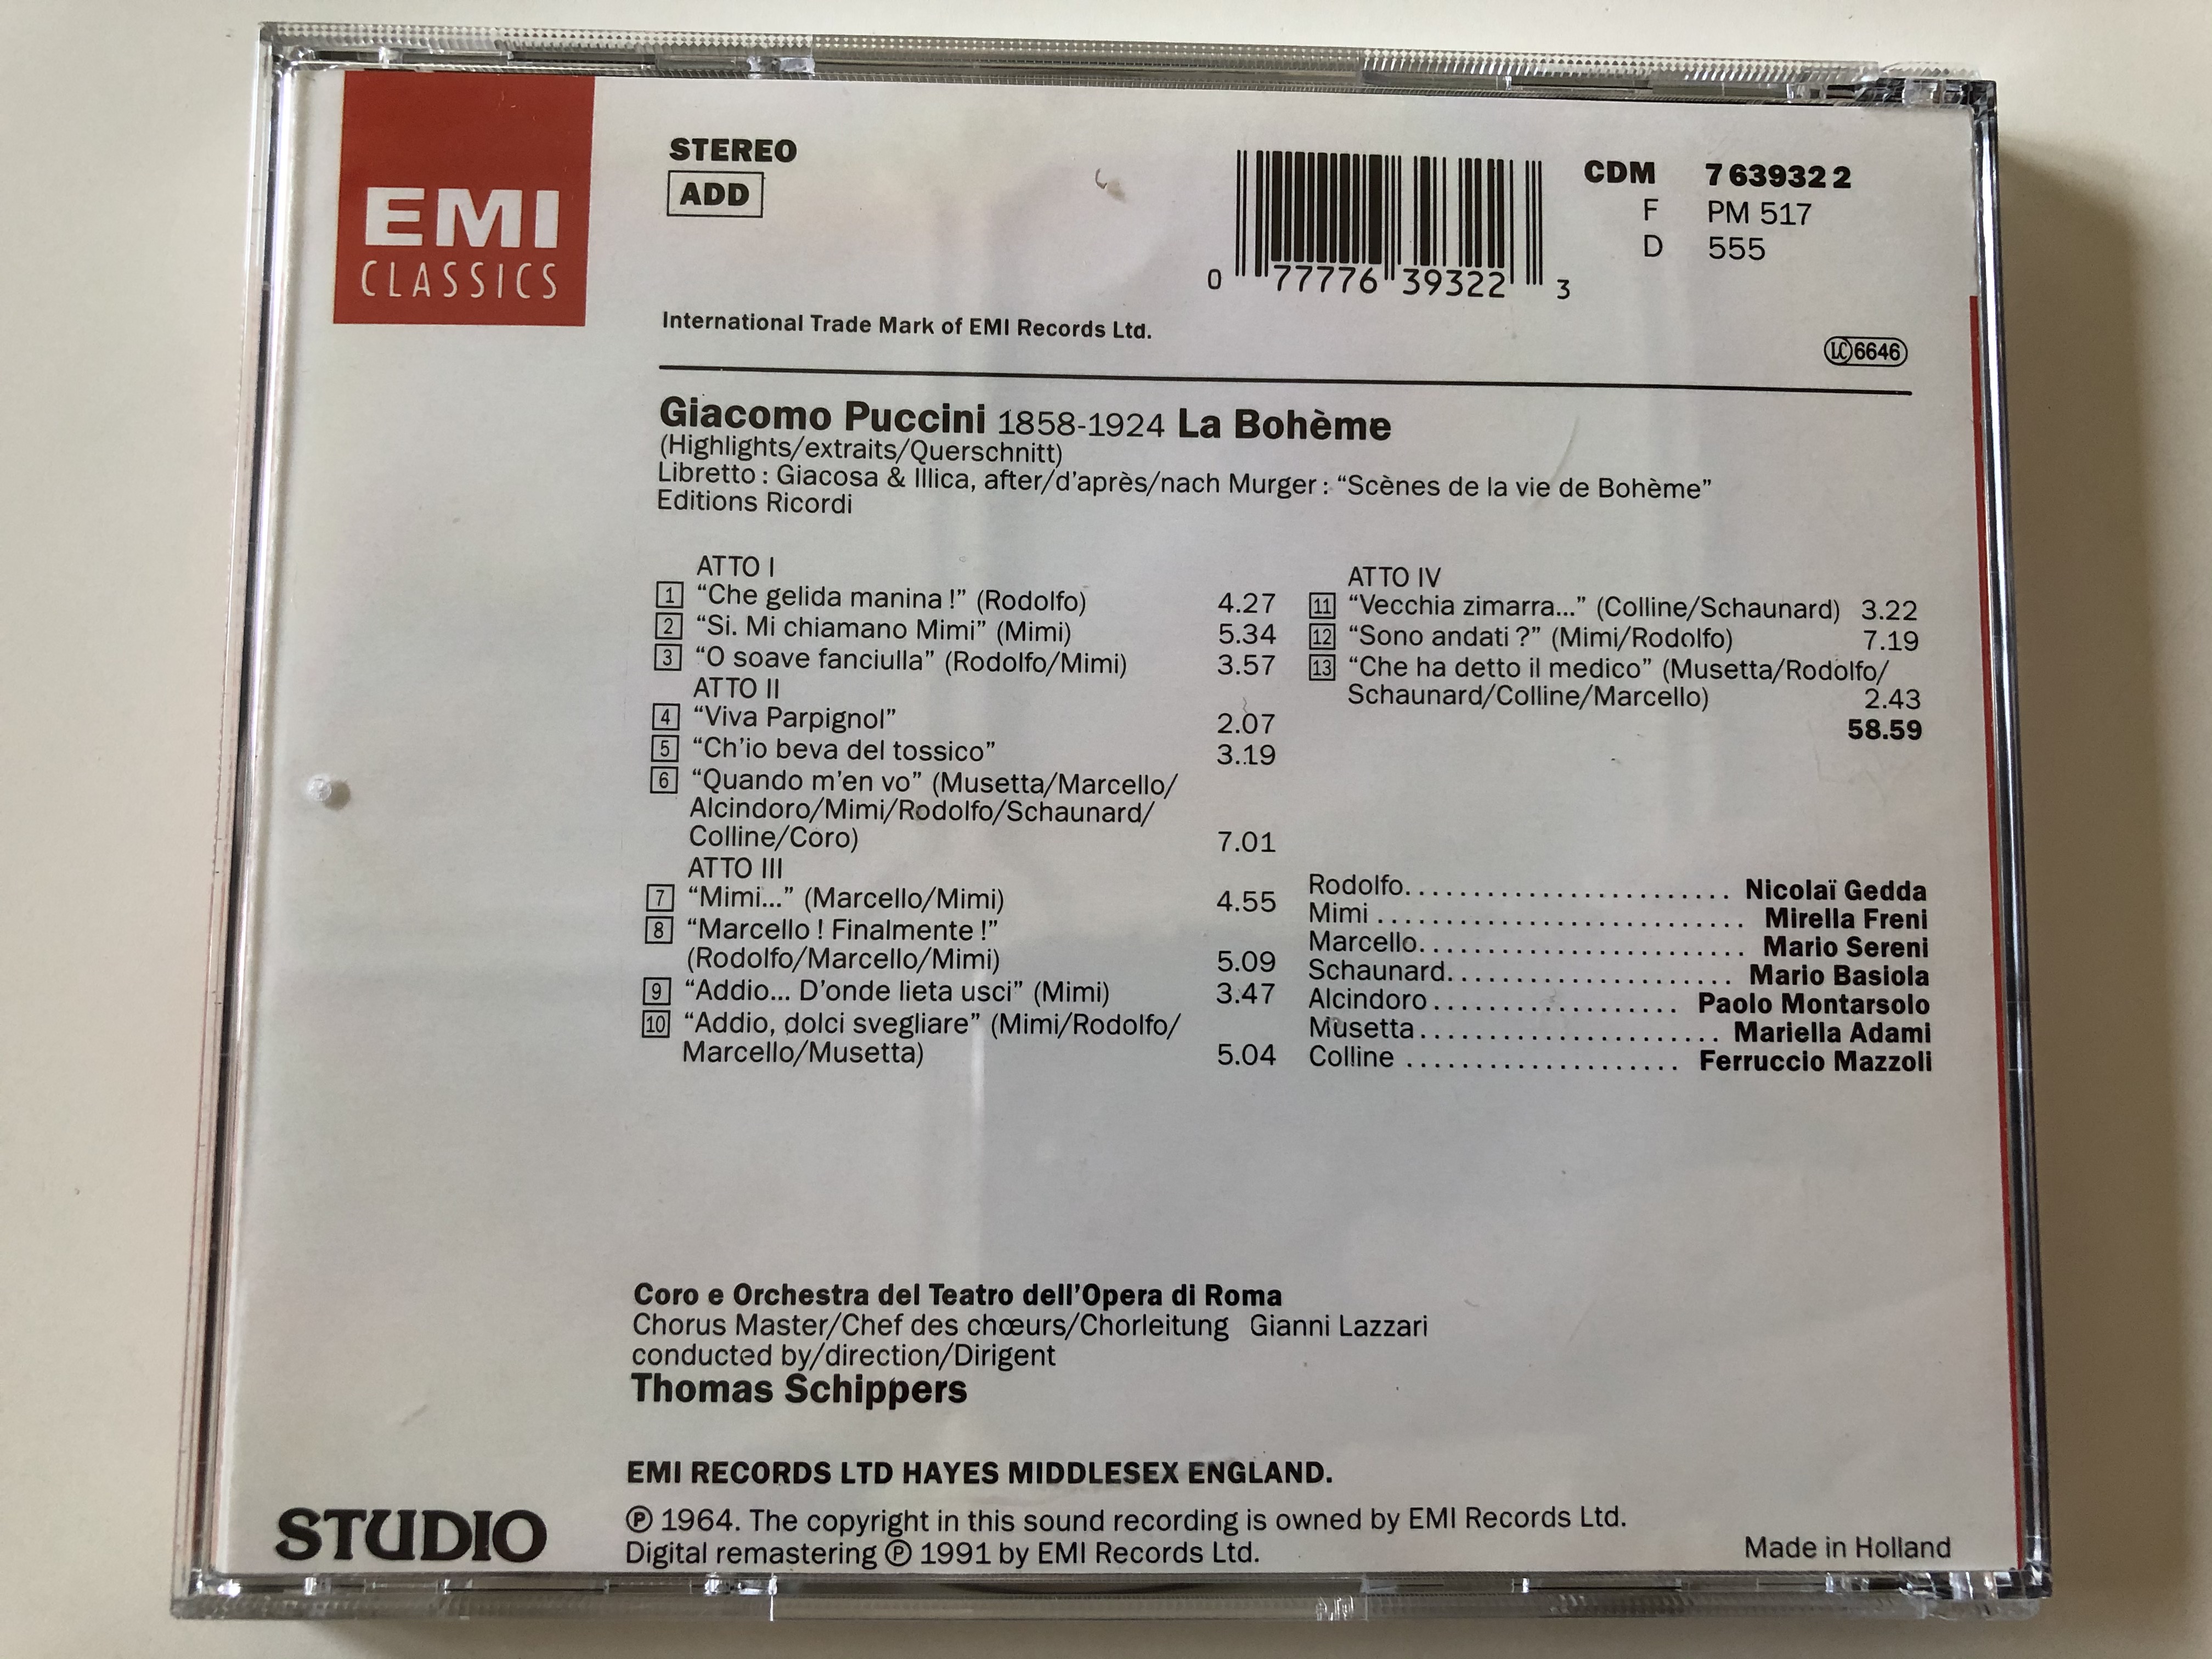 puccini-la-boh-me-highlightsextraitsquerschnitt-freni-gedda-coro-e-orchestra-del-teatro-dell-opera-di-roma-schippers-emi-records-ltd.-audio-cd-1991-stereo-cdm-7-63932-2-4-.jpg